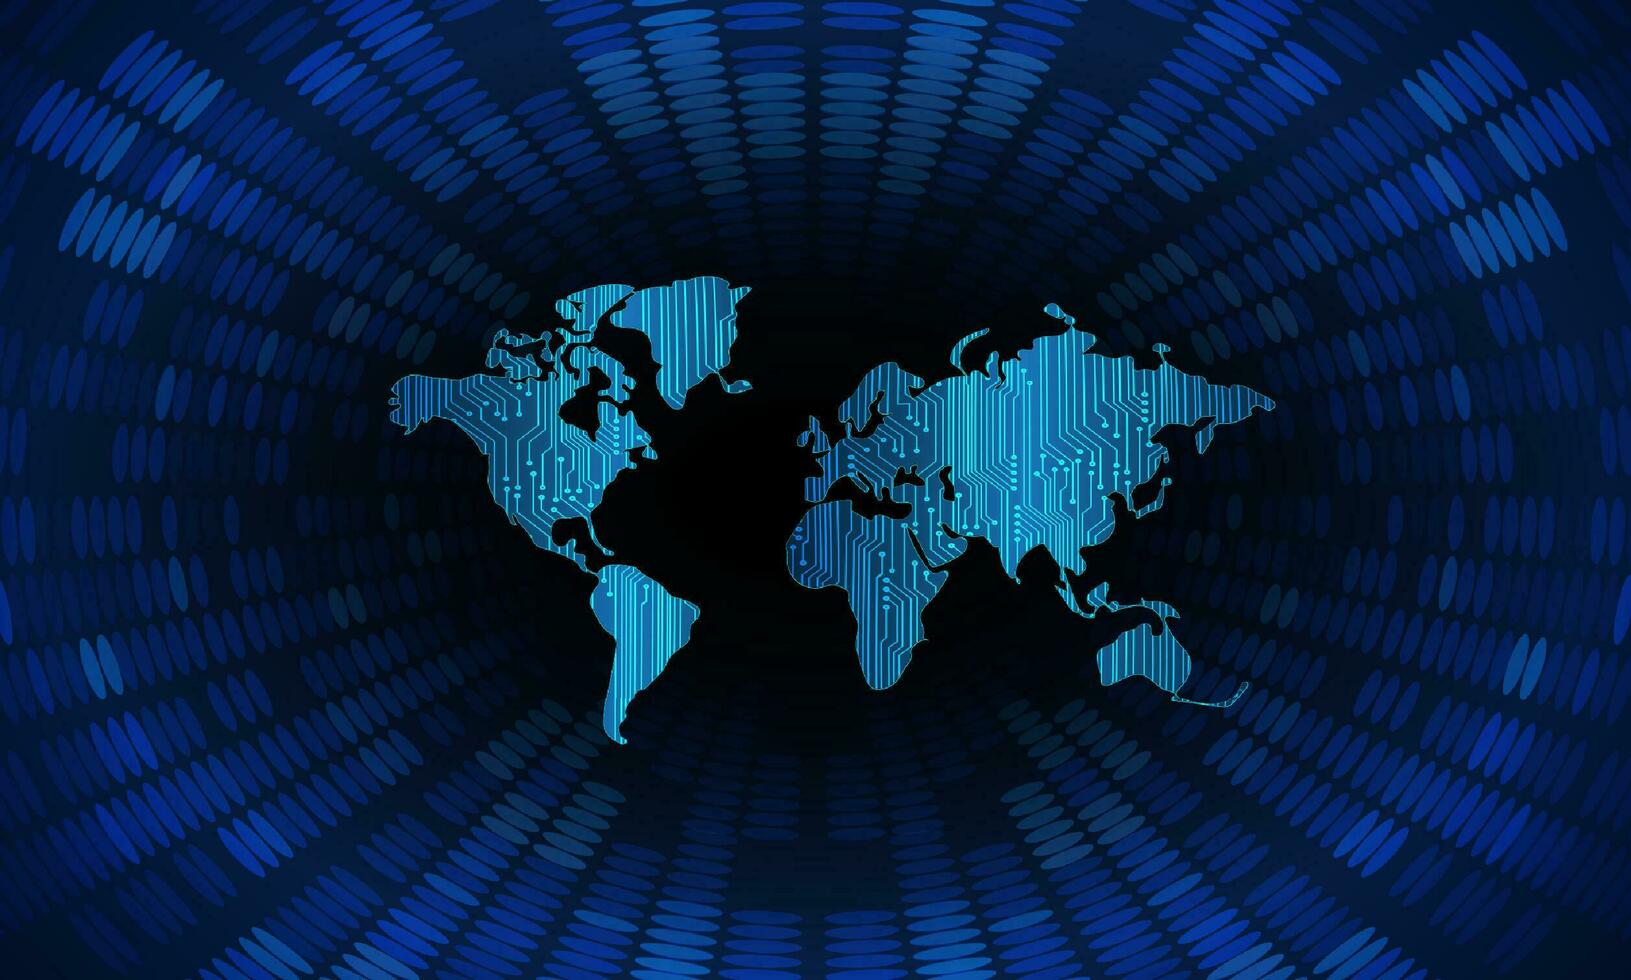 moderno cíber segurança tecnologia fundo com mundo mapa vetor